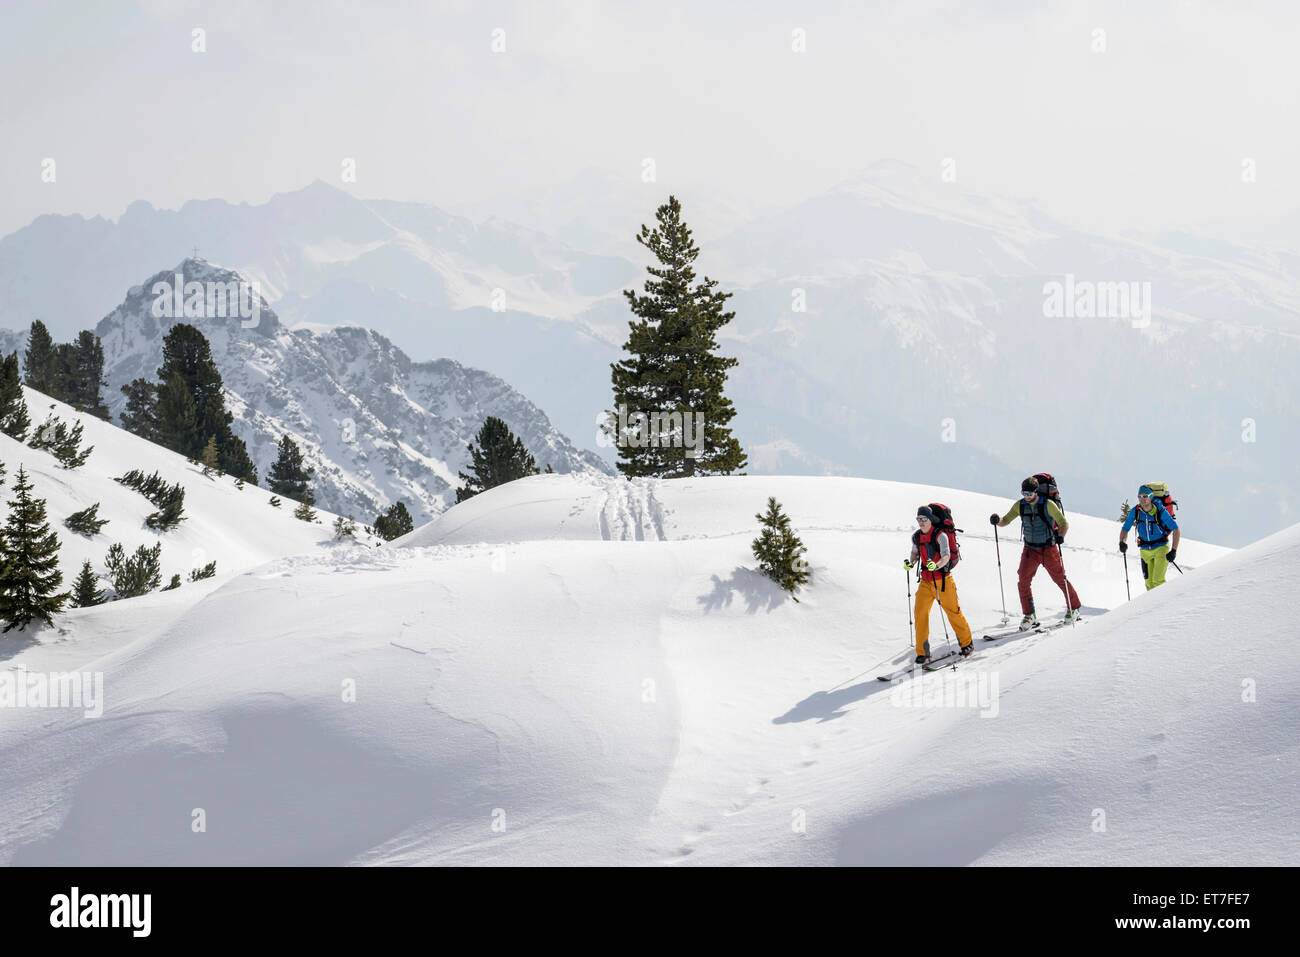 Ski mountaineers climbing on snowy mountain, Tyrol, Austria Stock Photo